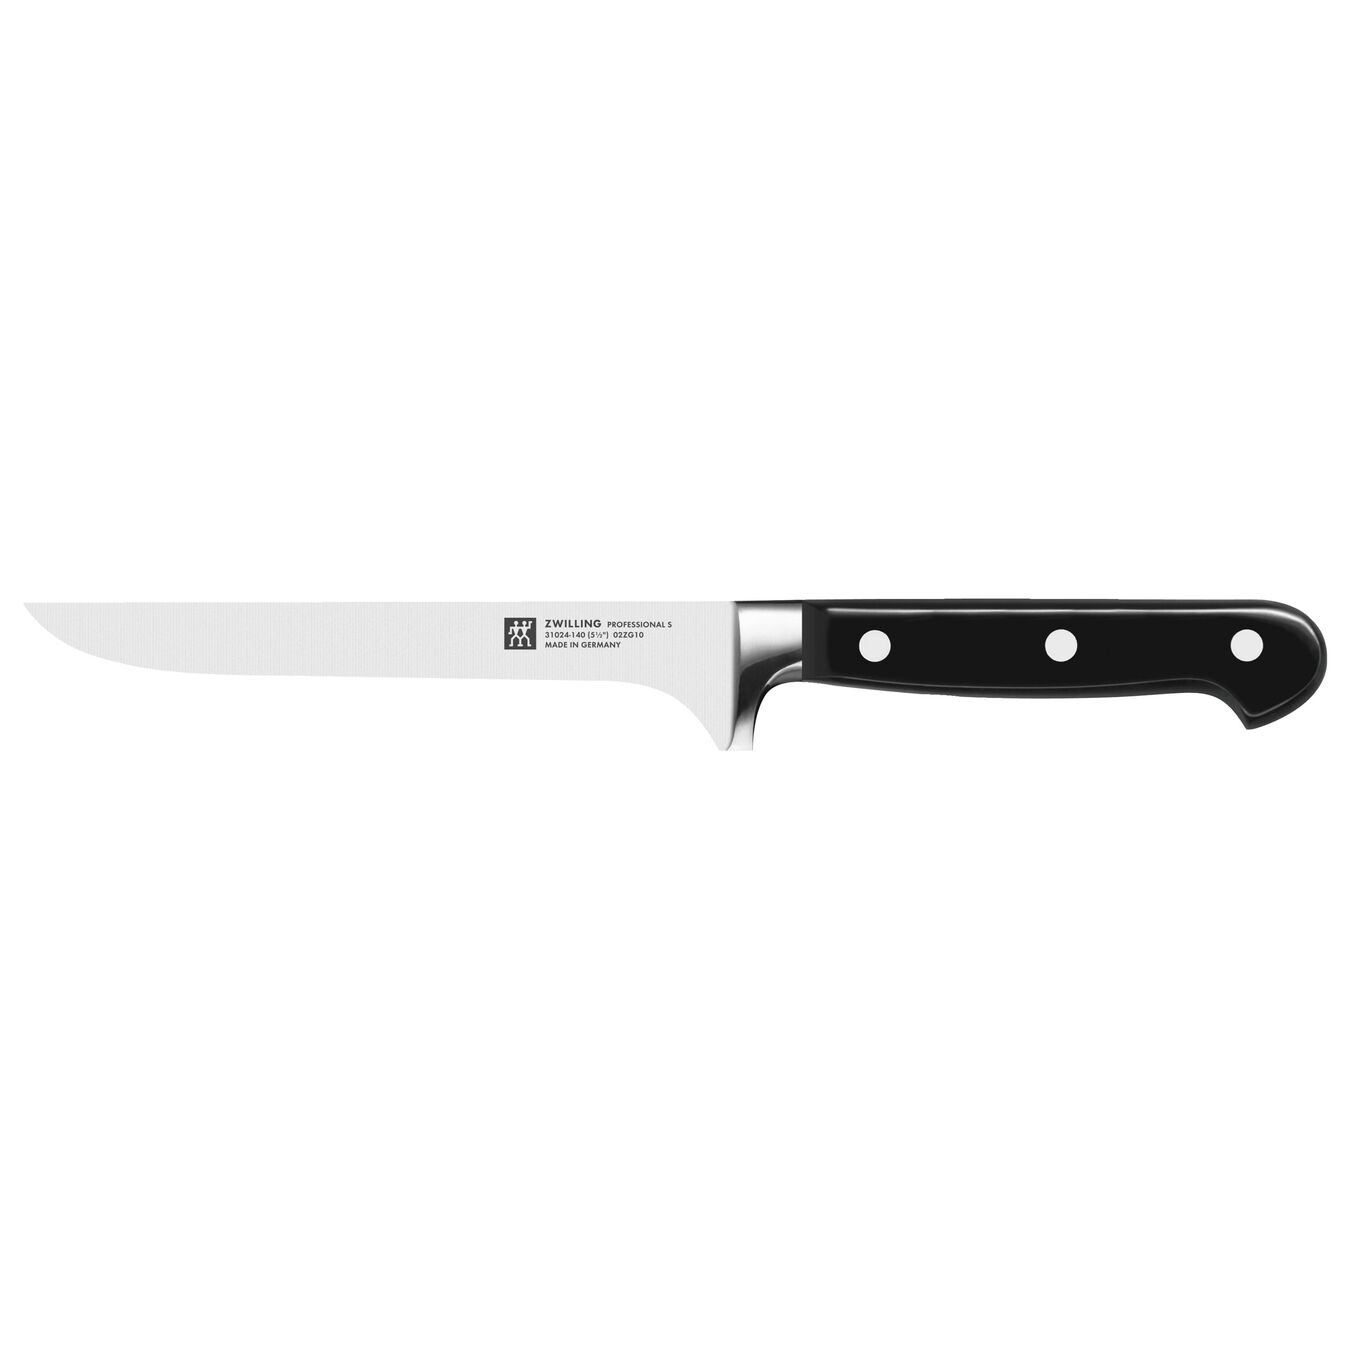 14 cm Boning knife,,large 1